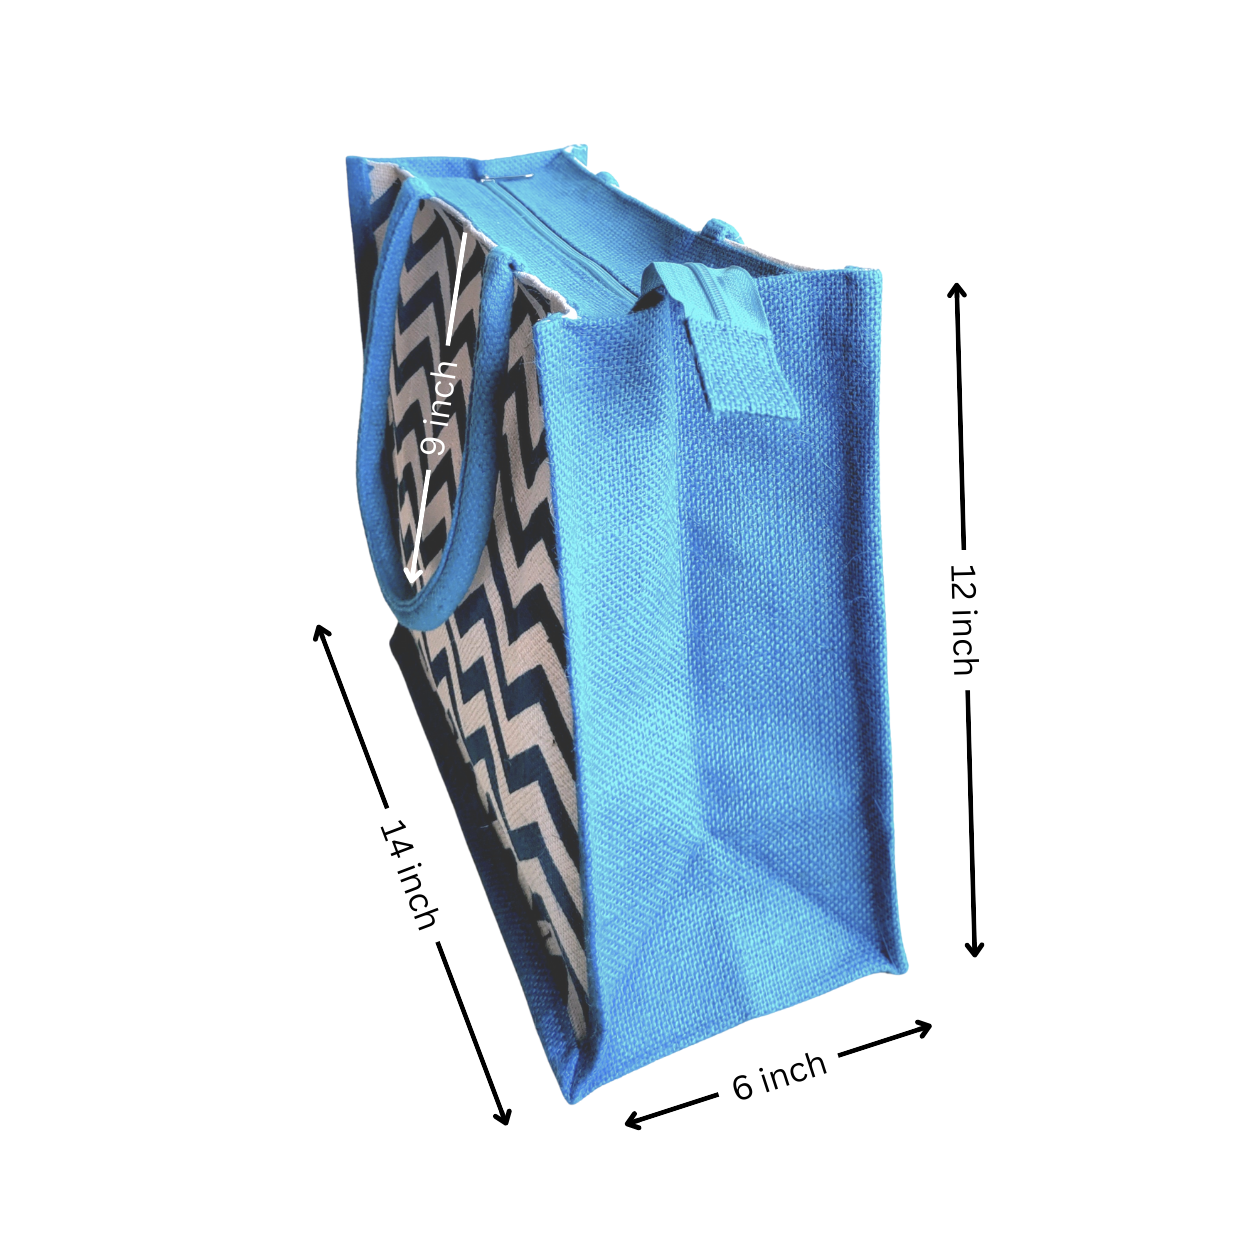 Printed Jute Shopping Bag - Chevron Teal Blue Large